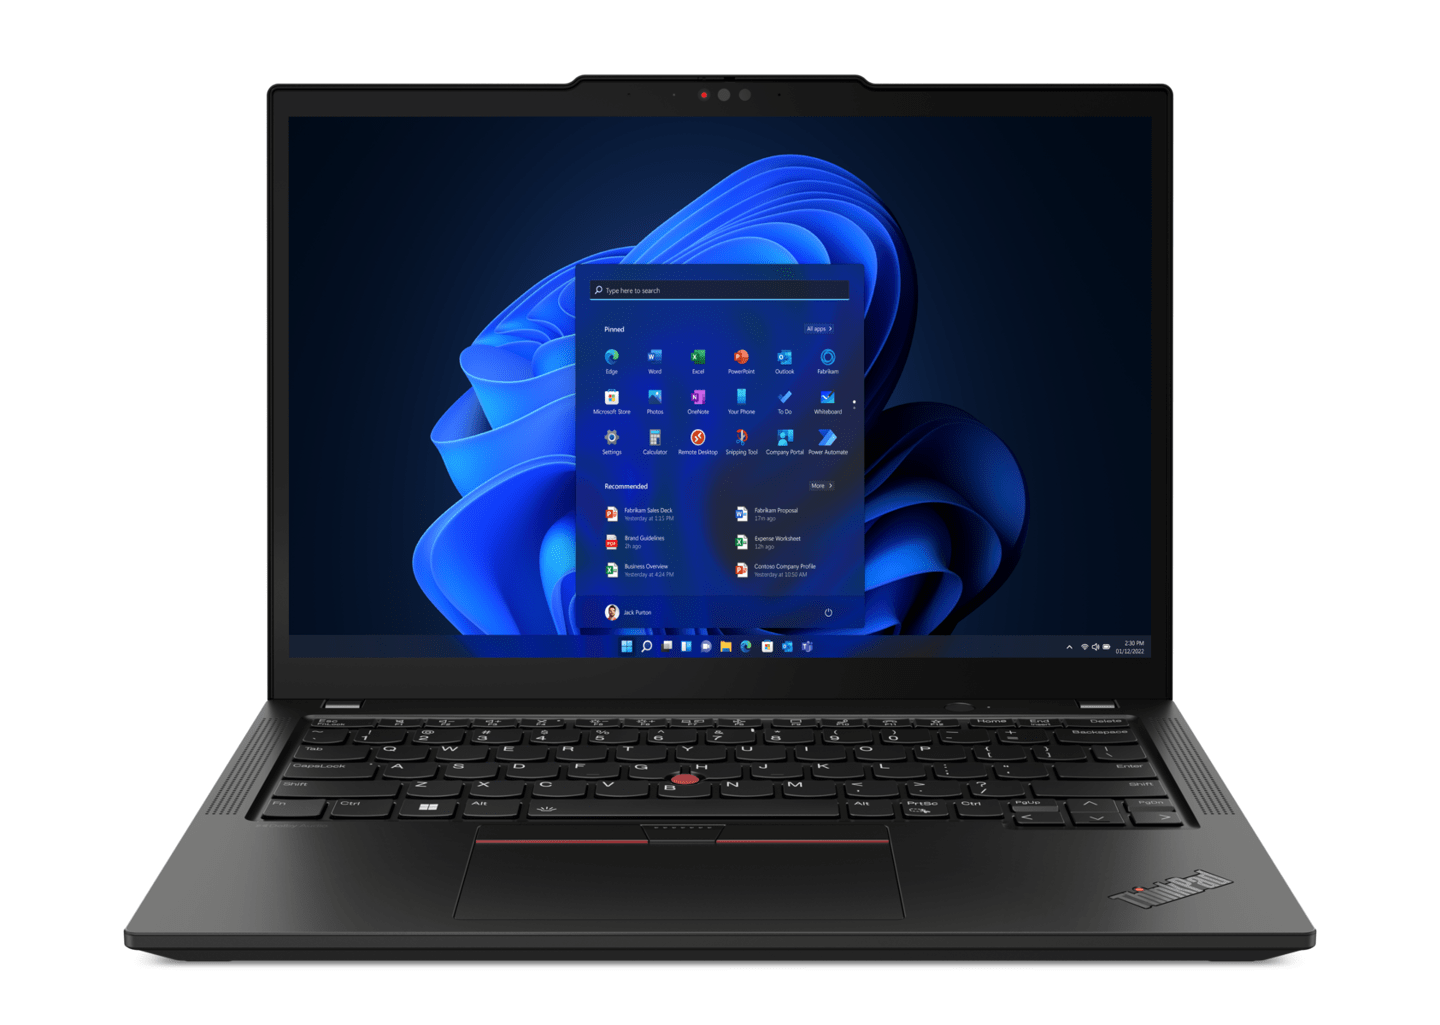  2 月 27 日联想发布 ThinkPad X13 Gen 4 和 ThinkPad X13 Yoga Gen 4 笔记本